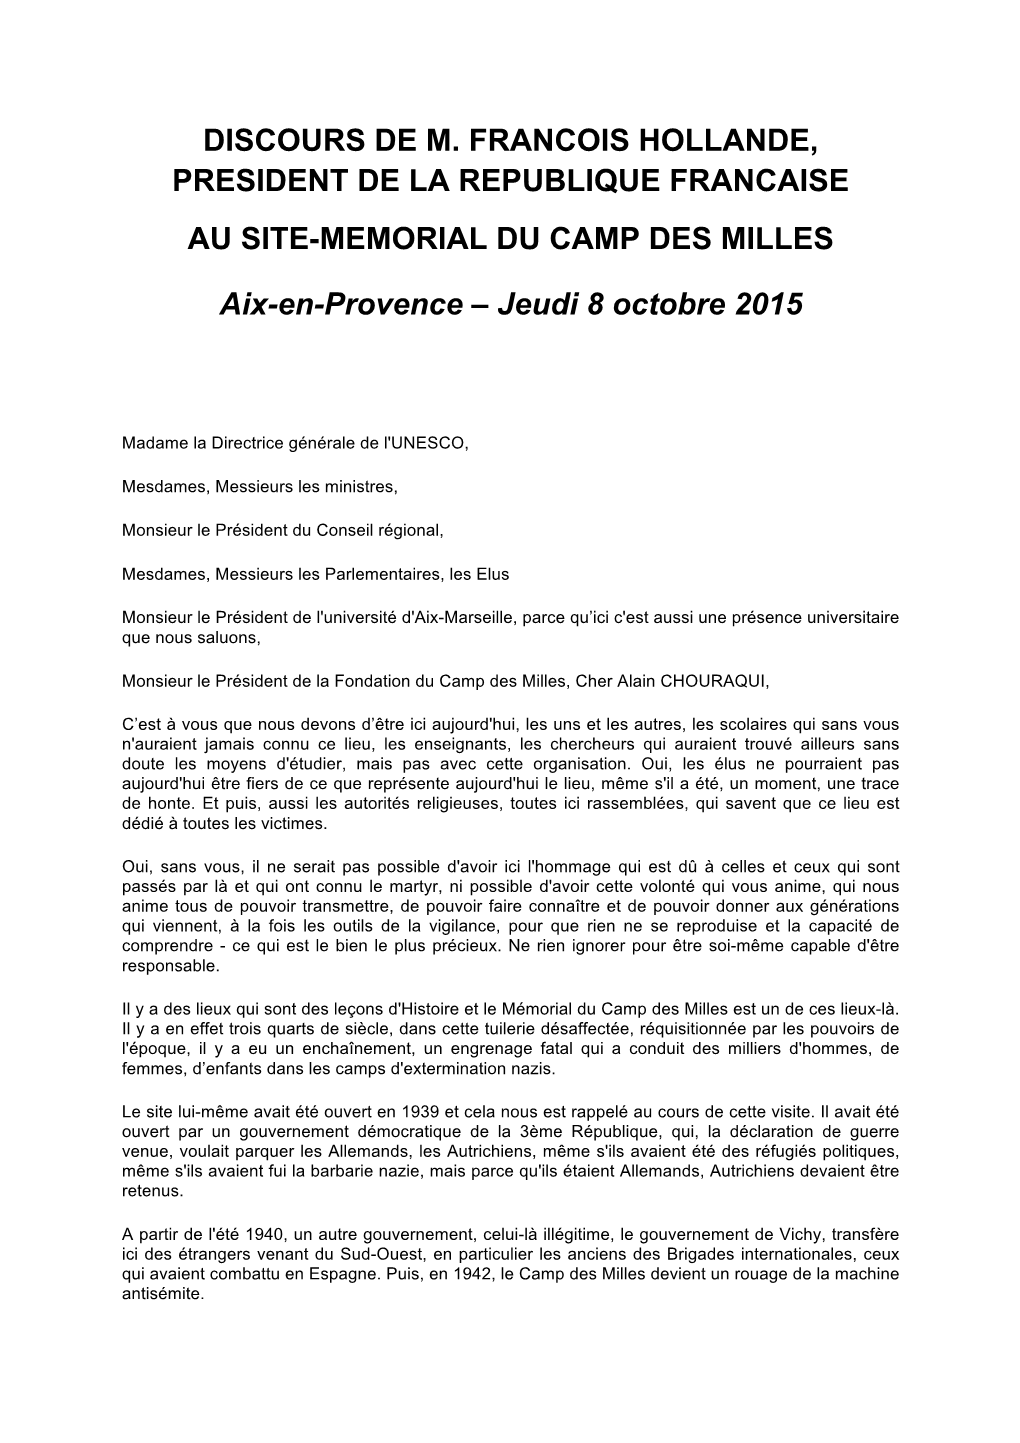 Discours De M. Francois Hollande, President De La Republique Francaise Au Site-Memorial Du Camp Des Milles